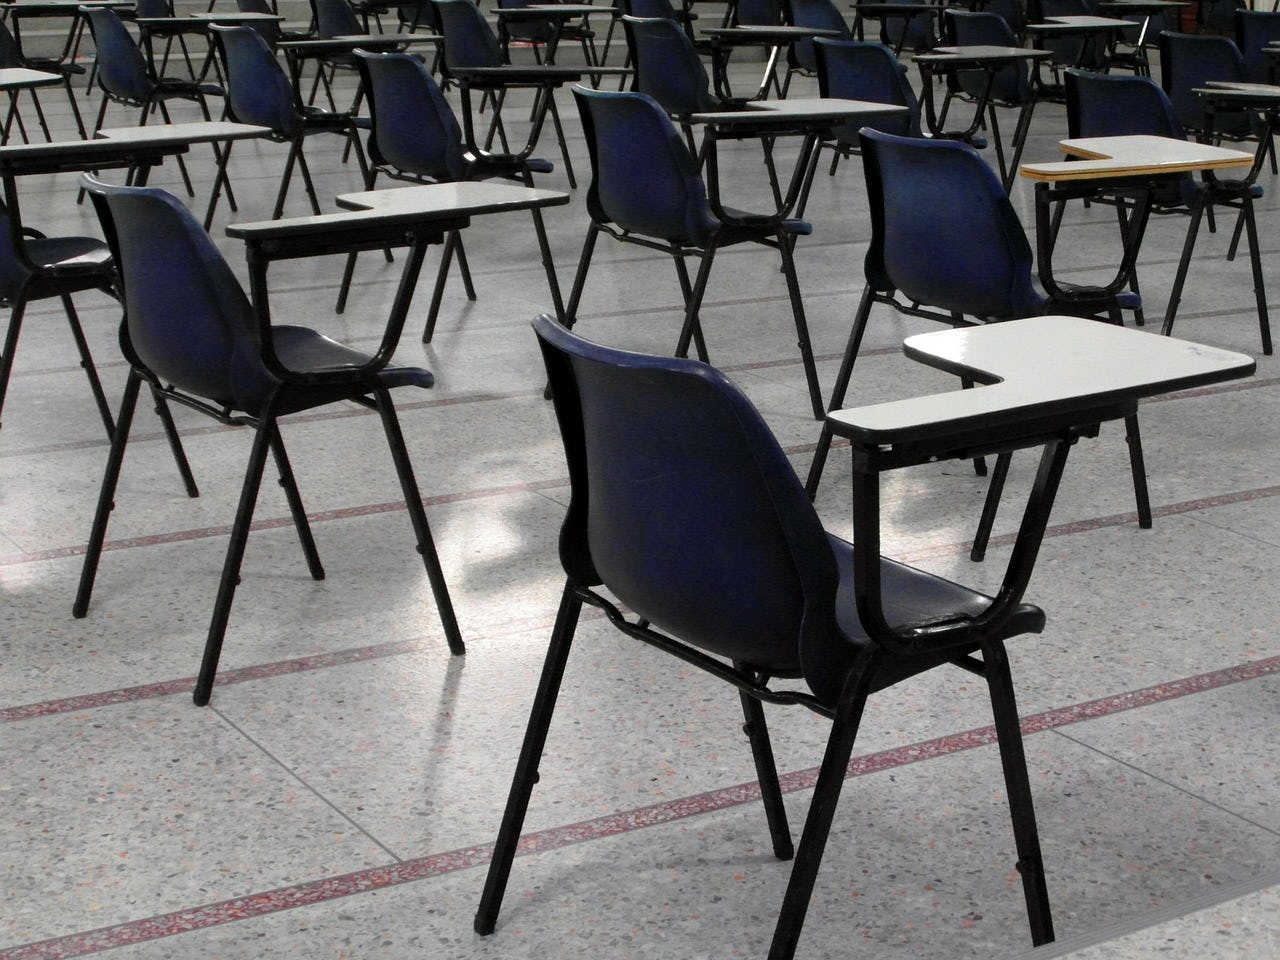 Tarieven Wft-examens gaan 10% omlaag